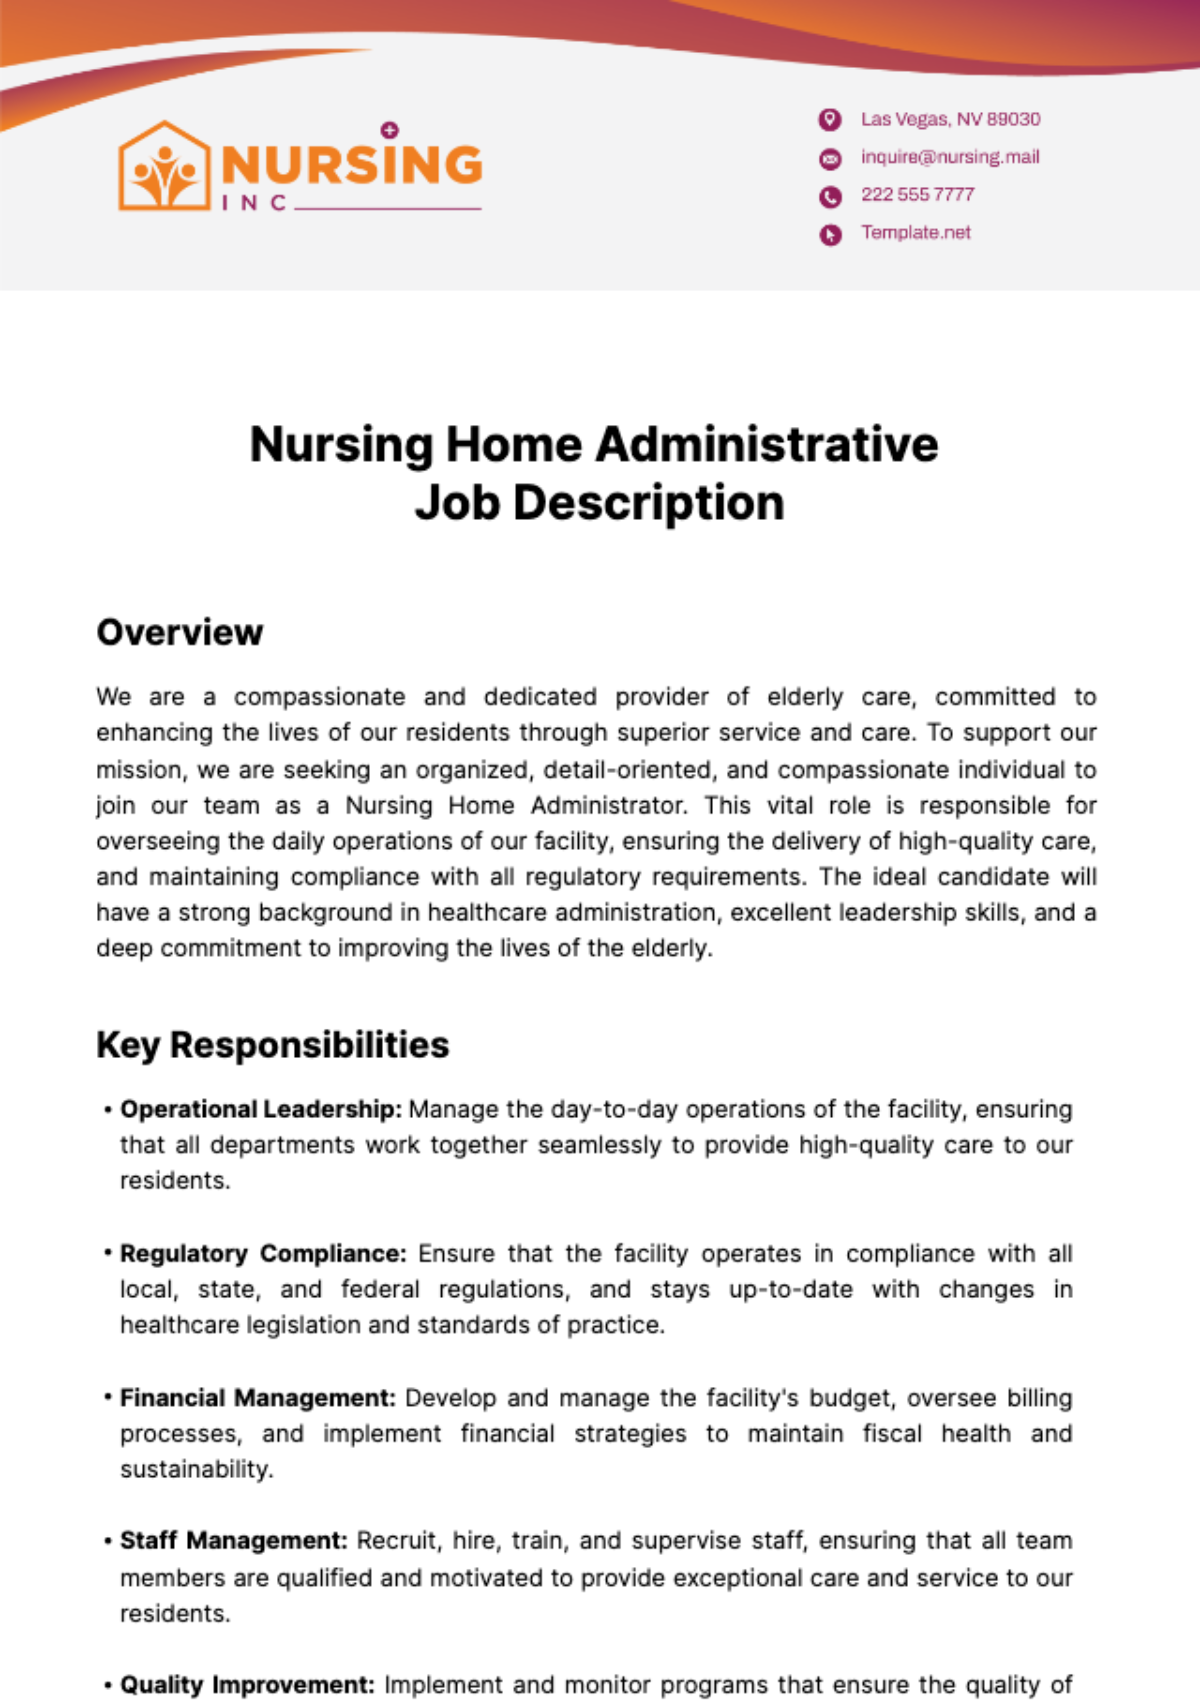 Free Nursing Home Administrative Job Description Template